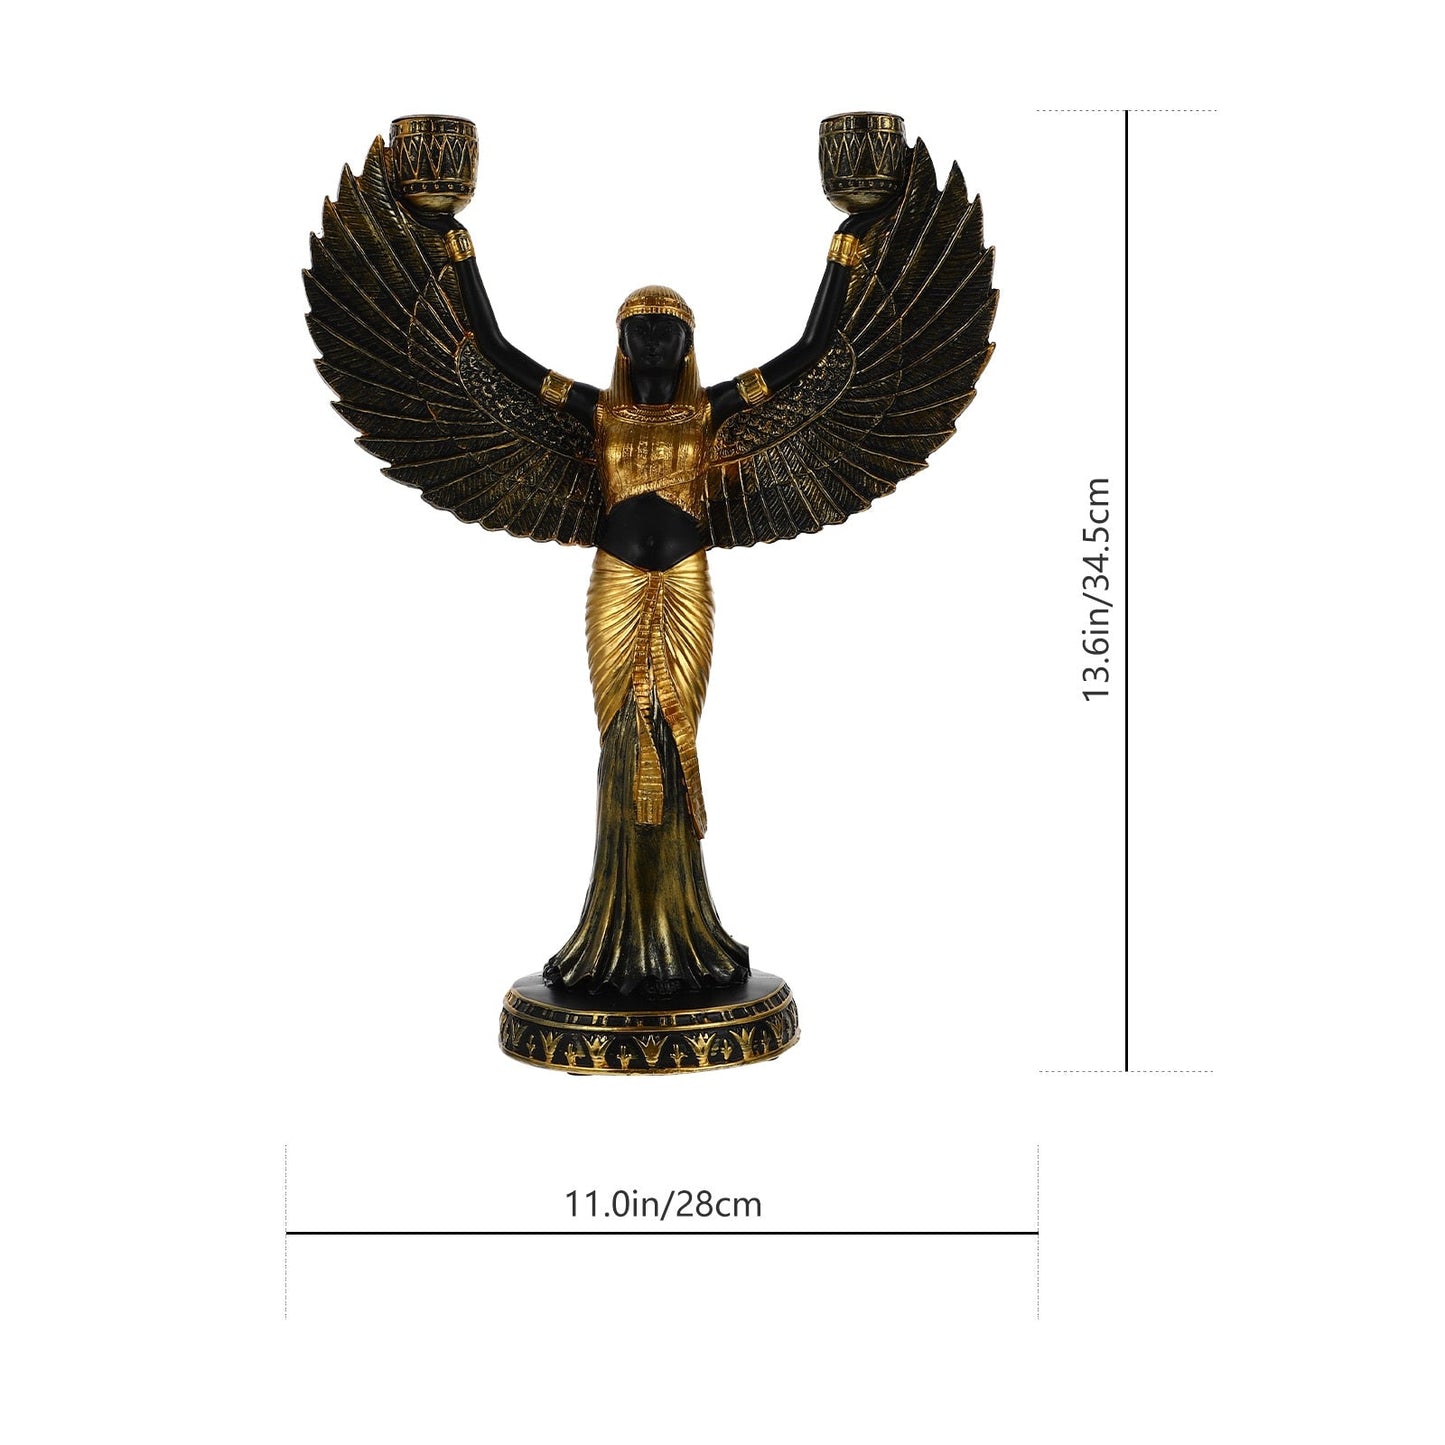 Ägyptische Halter Statue Göttin Isis Figur Skulptur Kerzenhalter Harz Dekor Metall Home Winged Theme Säule Antike 